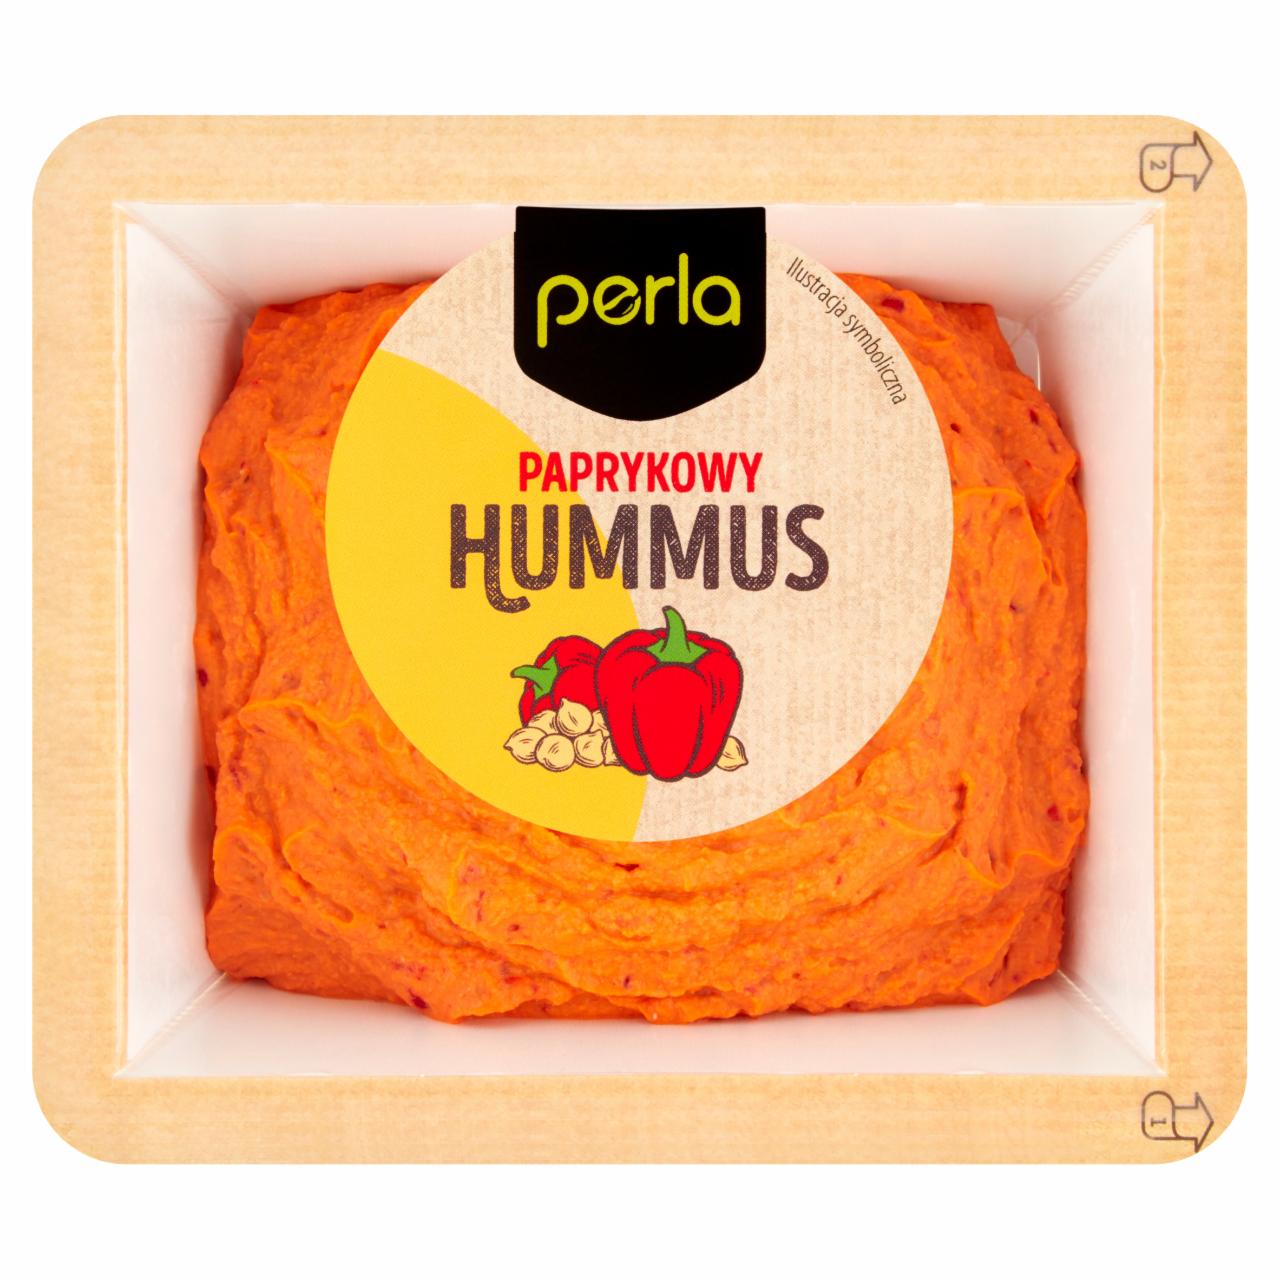 Zdjęcia - Perla Hummus paprykowy 175 g